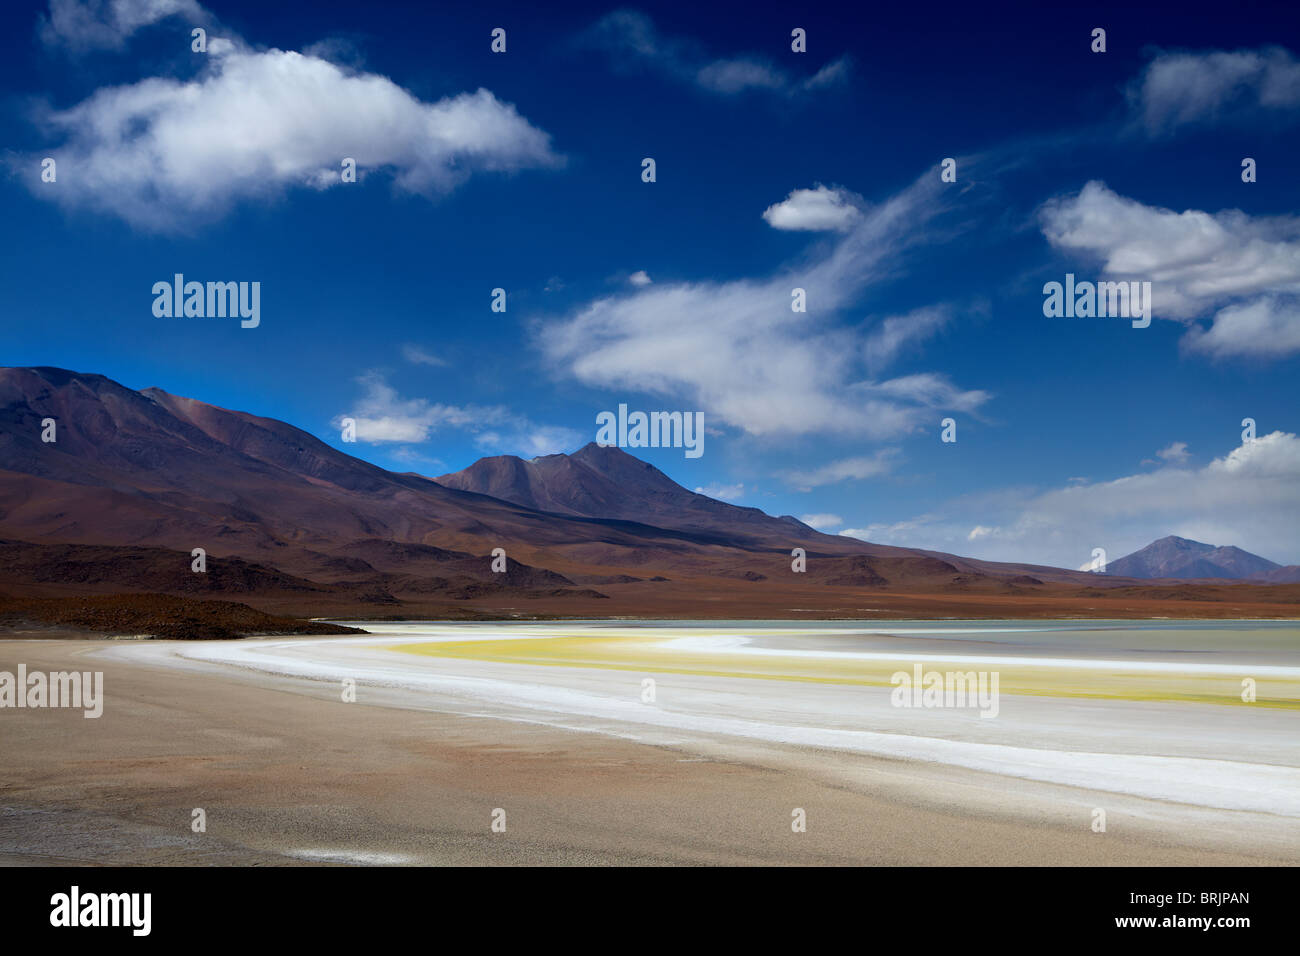 La remota región del alto desierto, el altiplano y los volcanes cerca Tapaquilcha, Bolivia Foto de stock